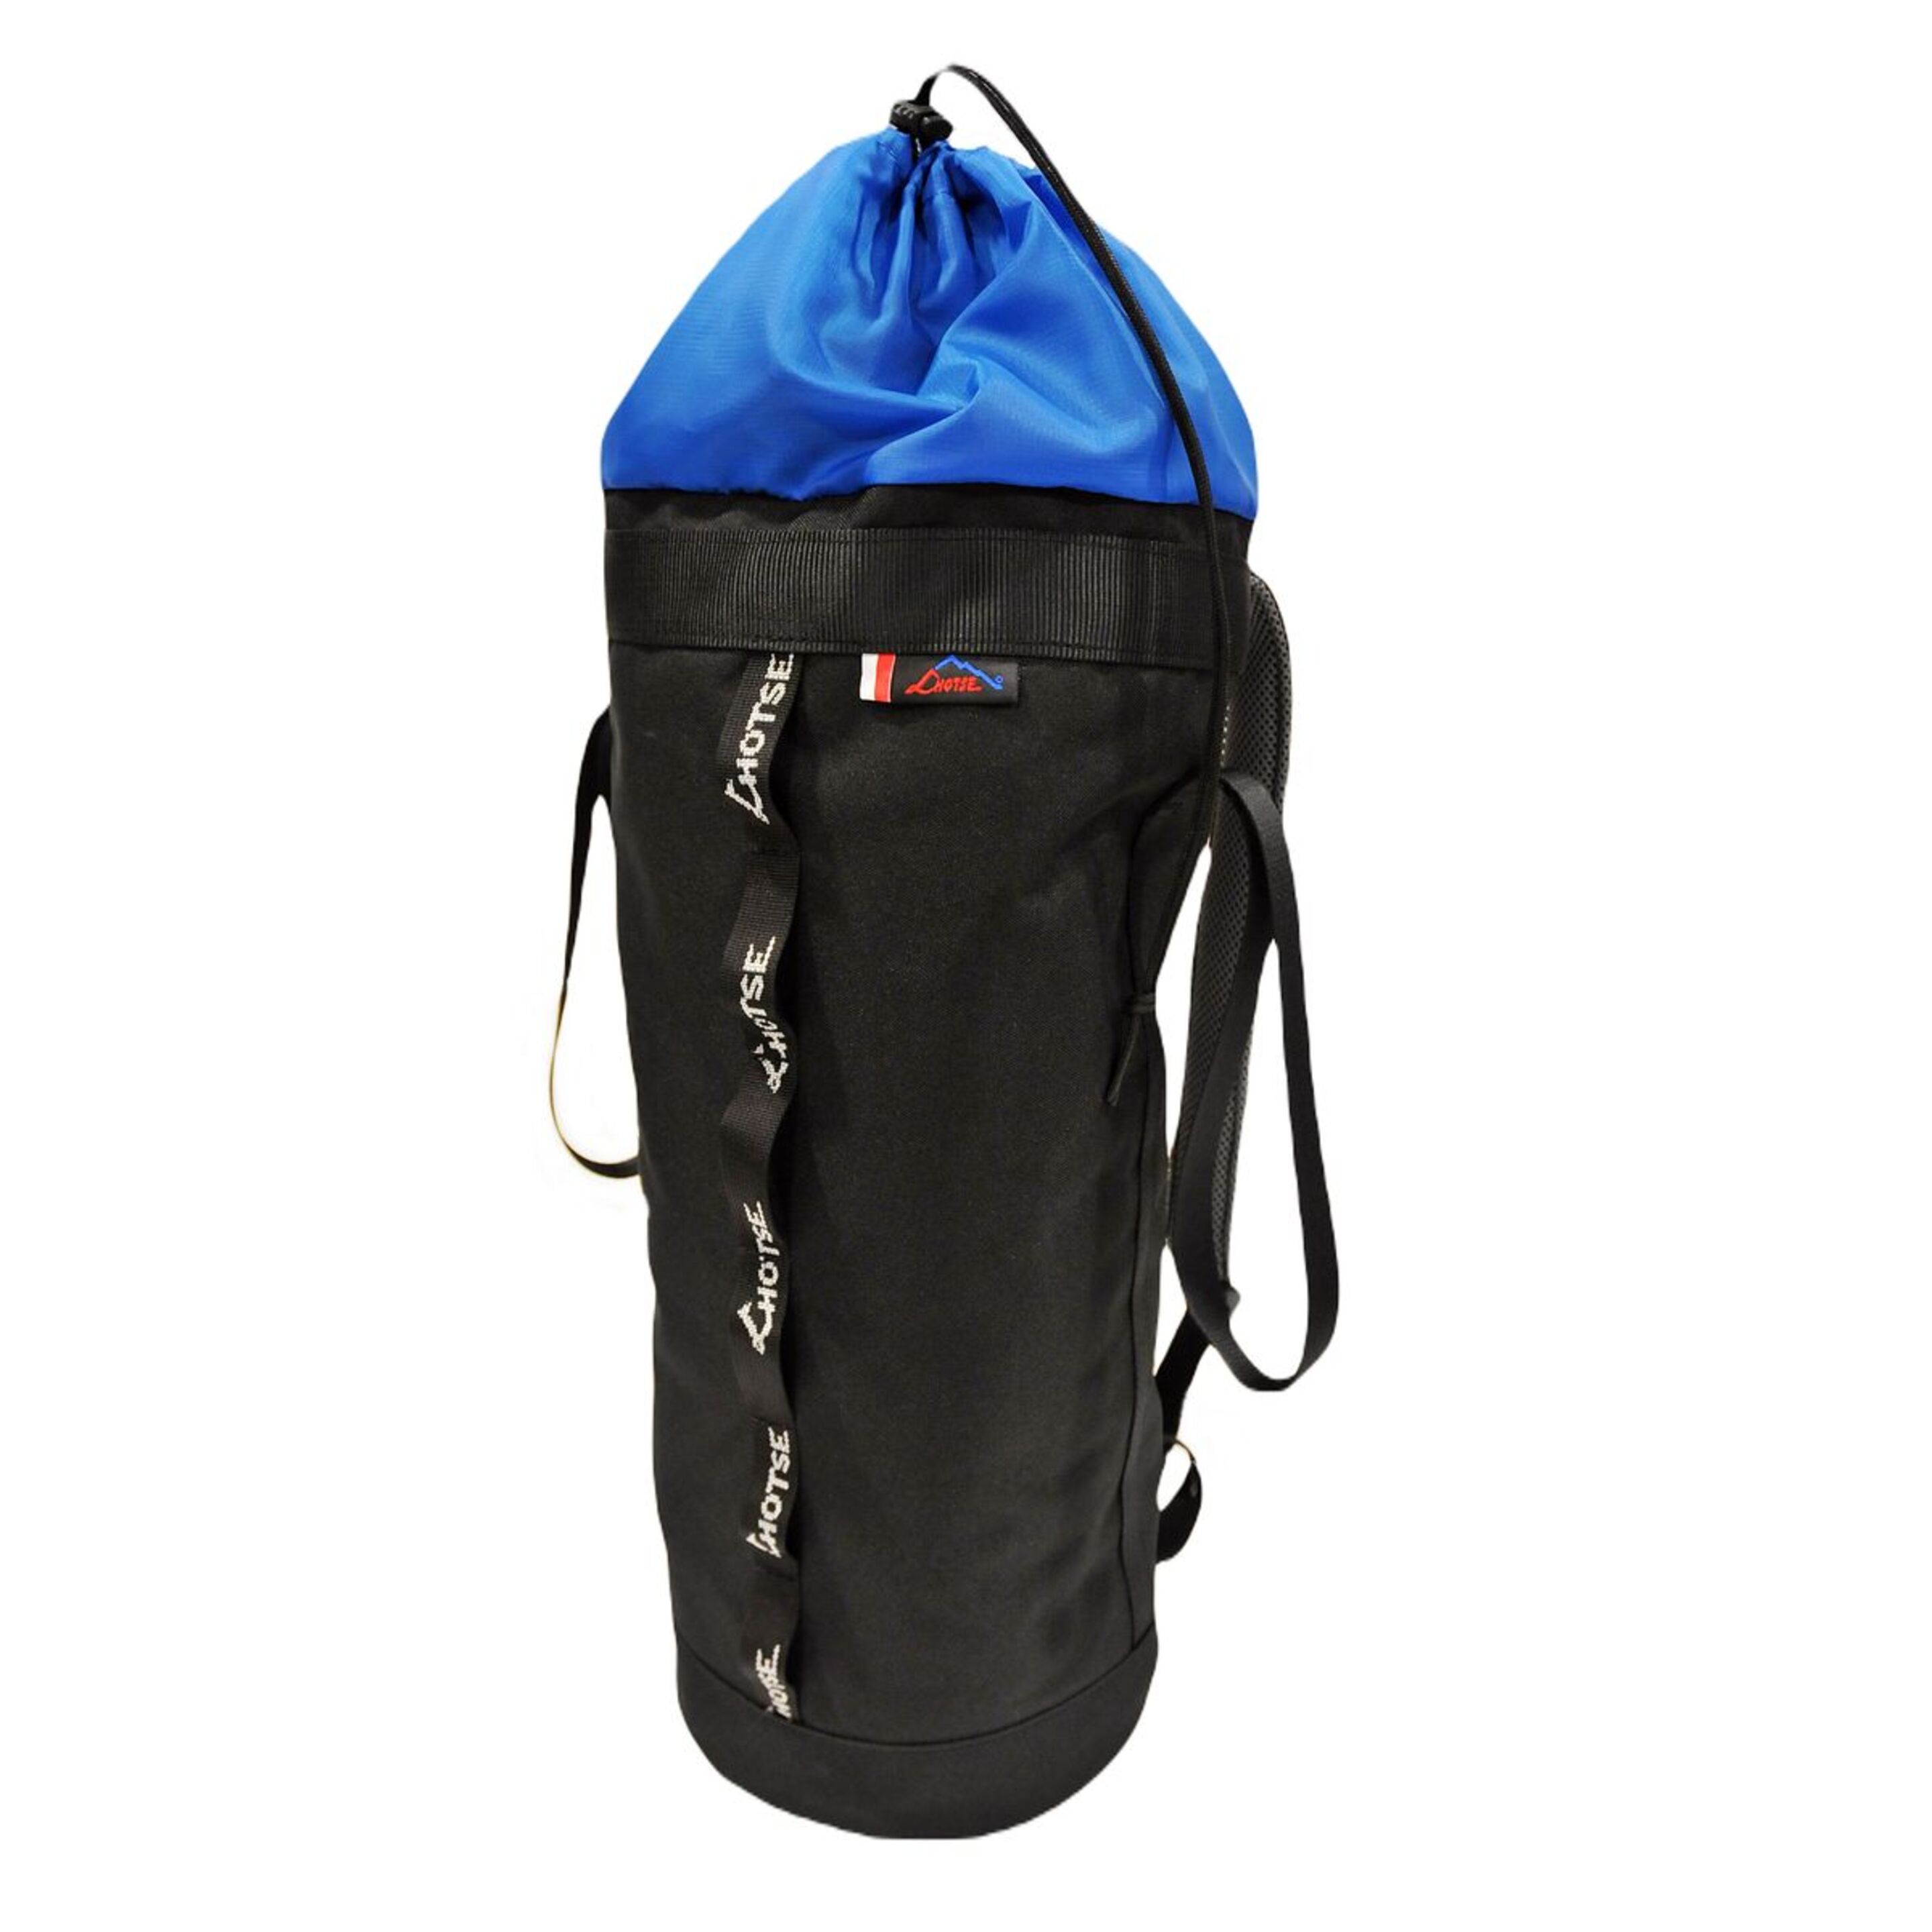 Bolsa Porta Cuerda Lhotse Rope Bag 20l - negro-azul - 